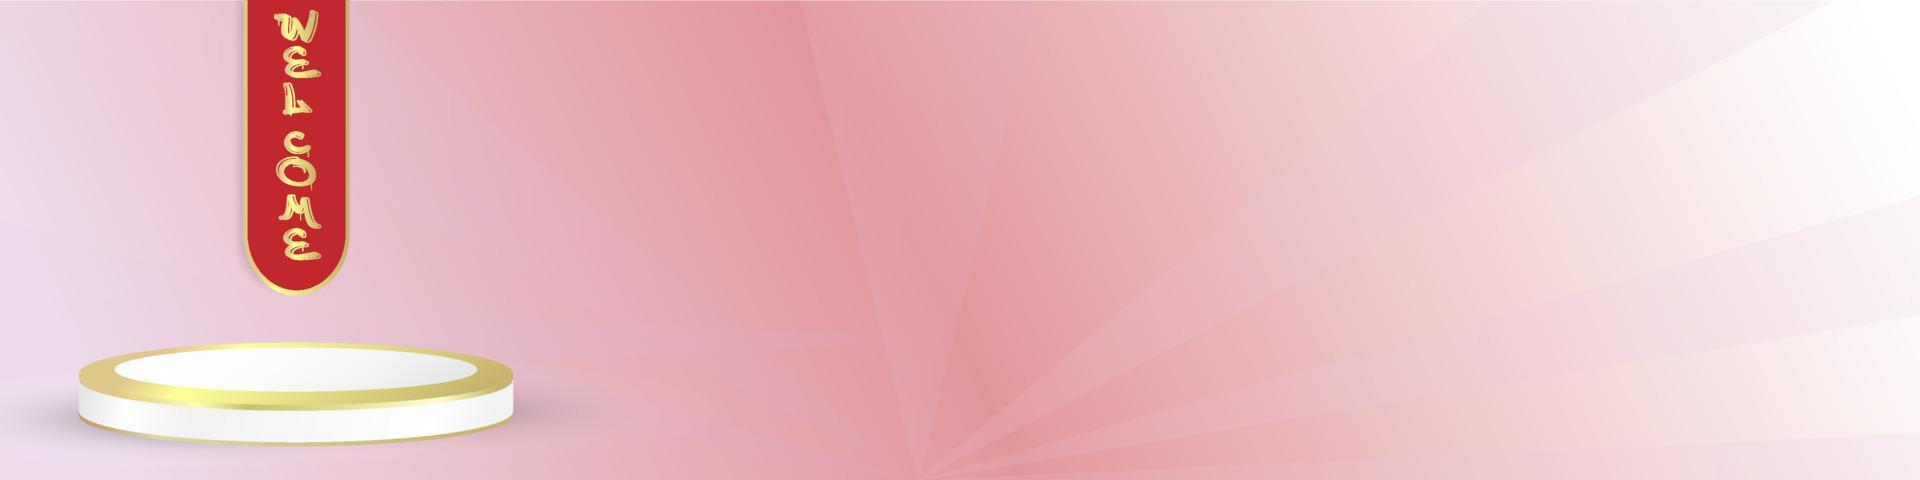 rosa bakgrund med 3d podiumelement. enkel och elegant. malldesign för omslag, banner, hälsning och identitet för sociala medier. vektor